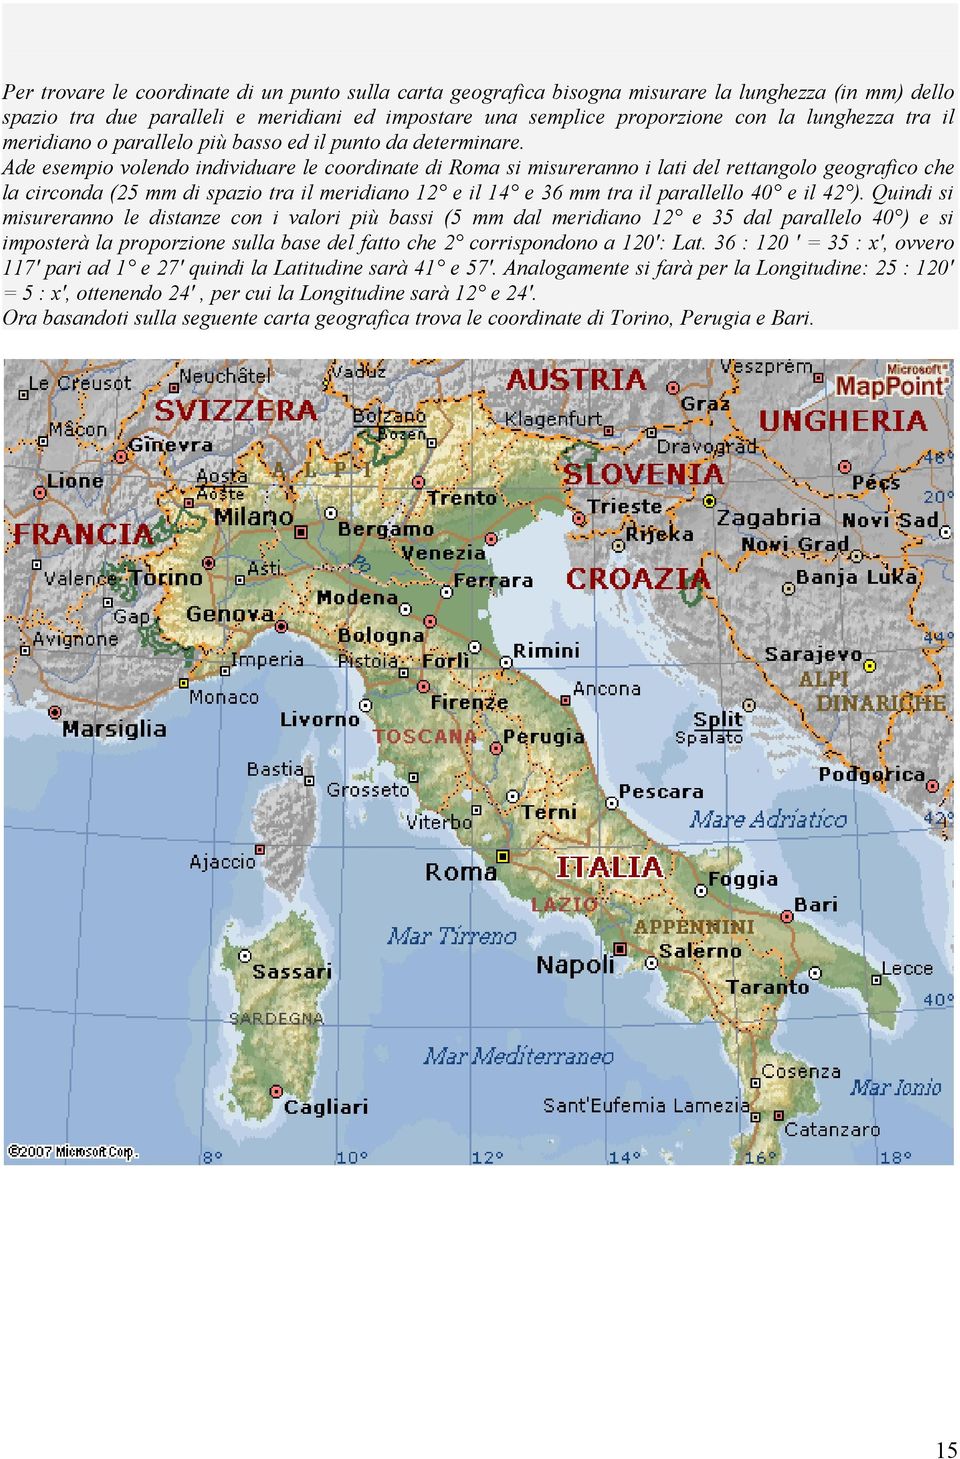 Ade esempio volendo individuare le coordinate di Roma si misureranno i lati del rettangolo geografico che la circonda (25 mm di spazio tra il meridiano 12 e il 14 e 36 mm tra il parallello 40 e il 42